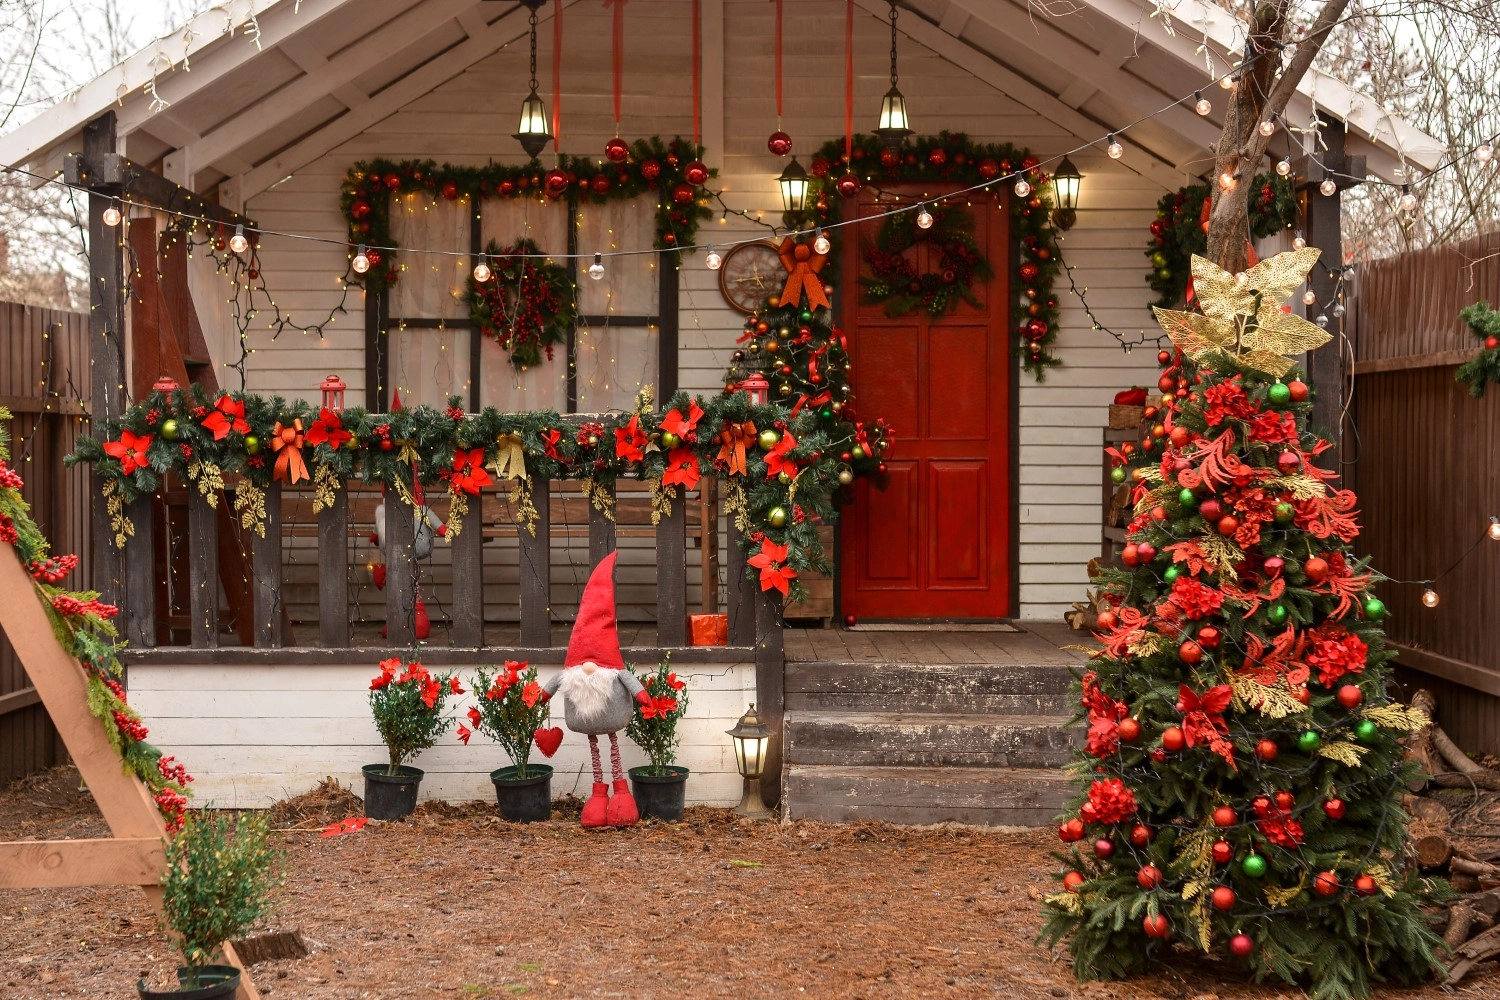 Dekoracje świąteczne przed dom w czerwonych i zielonych kolorach